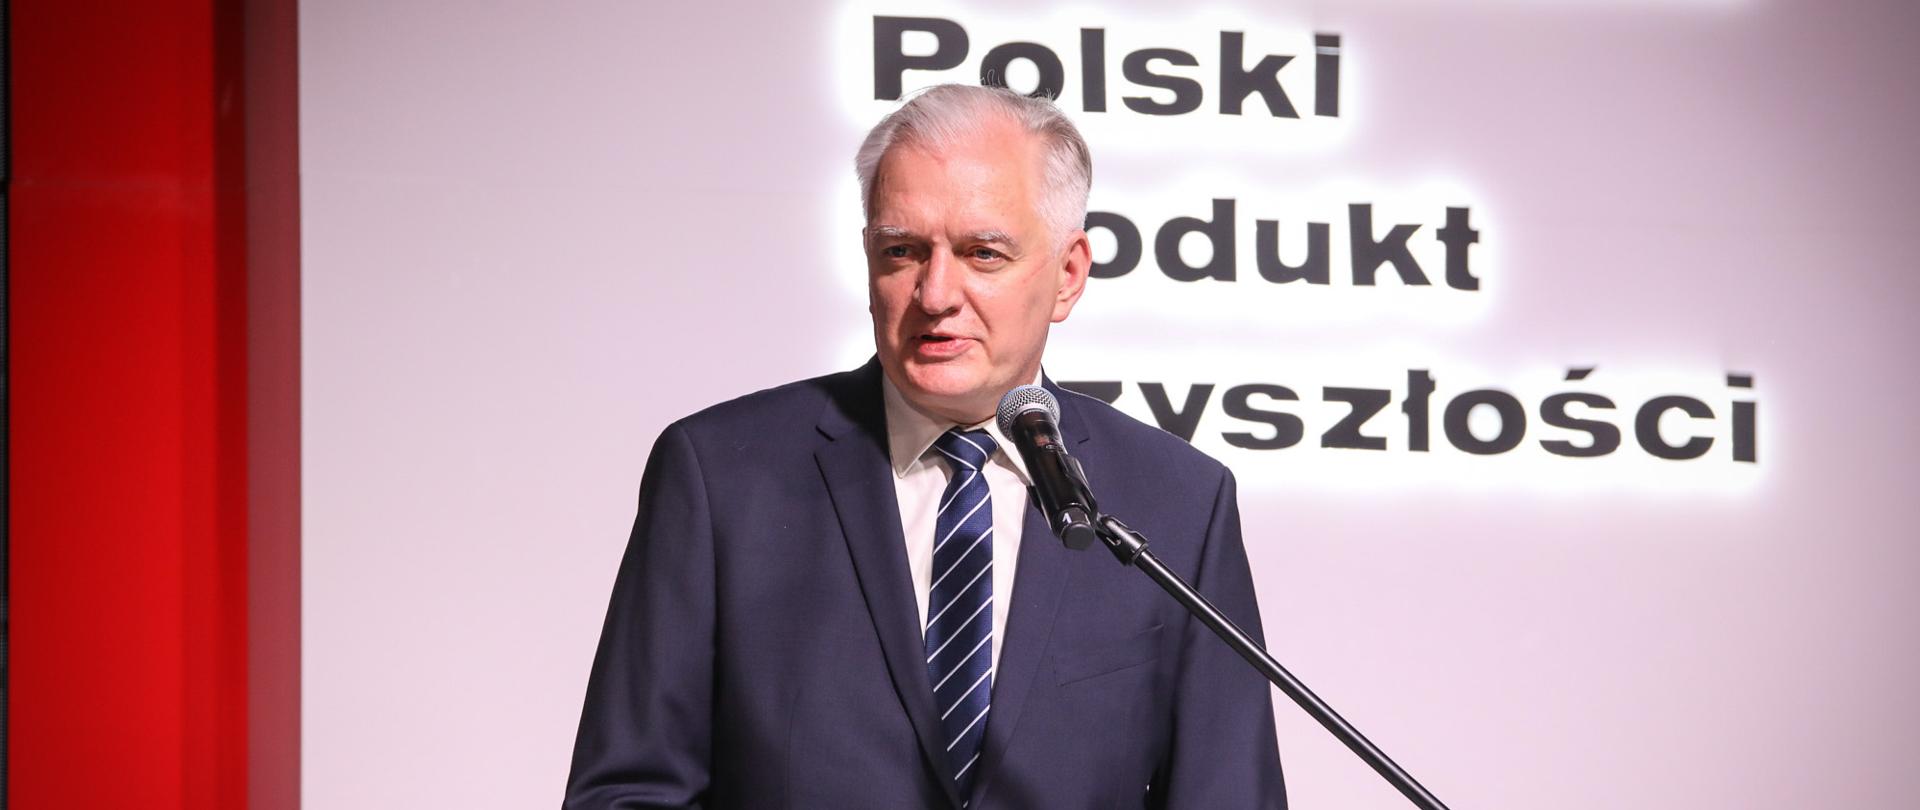 Na zdjęciu za pulpitem stoi wicepremier Jarosław Gowin i przemawia na gali Polski Produkt Przyszłości.